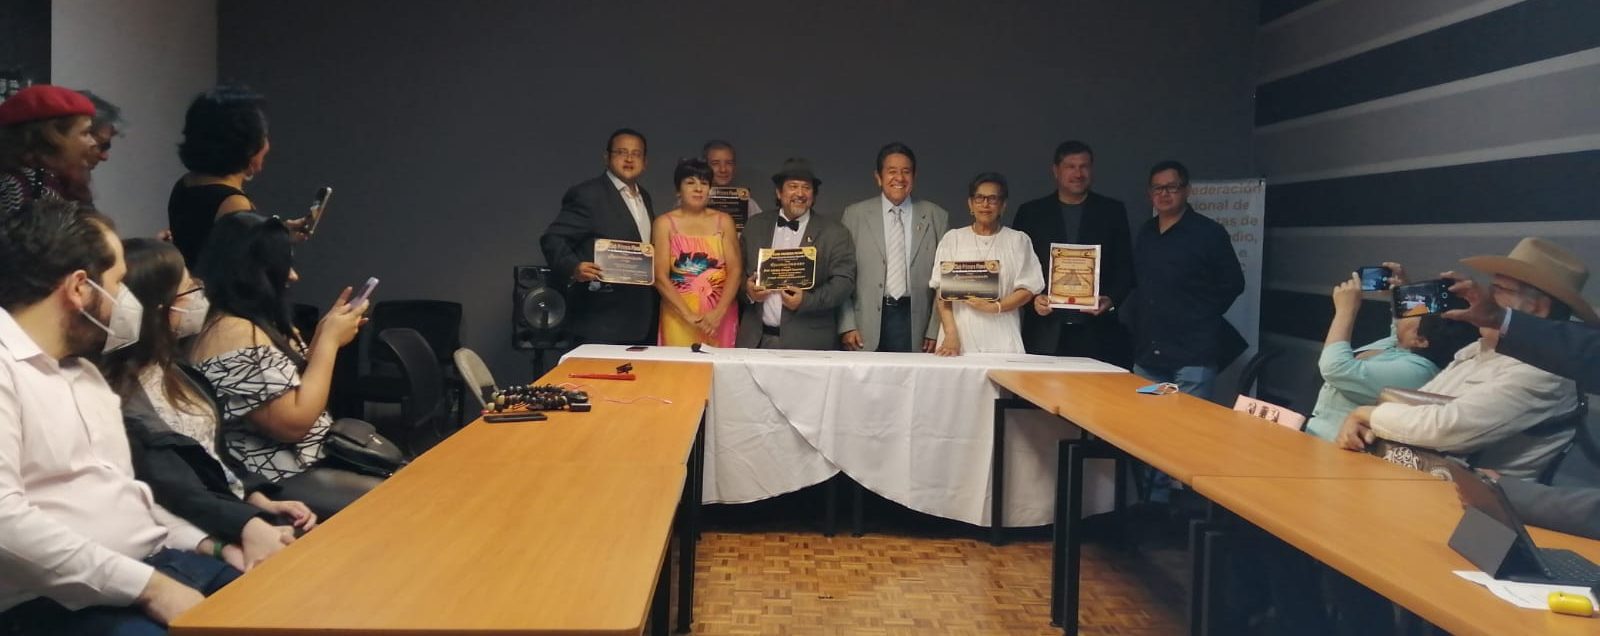 Club Primera Plana y CONPPRyT reconocen trayectoria de periodistas